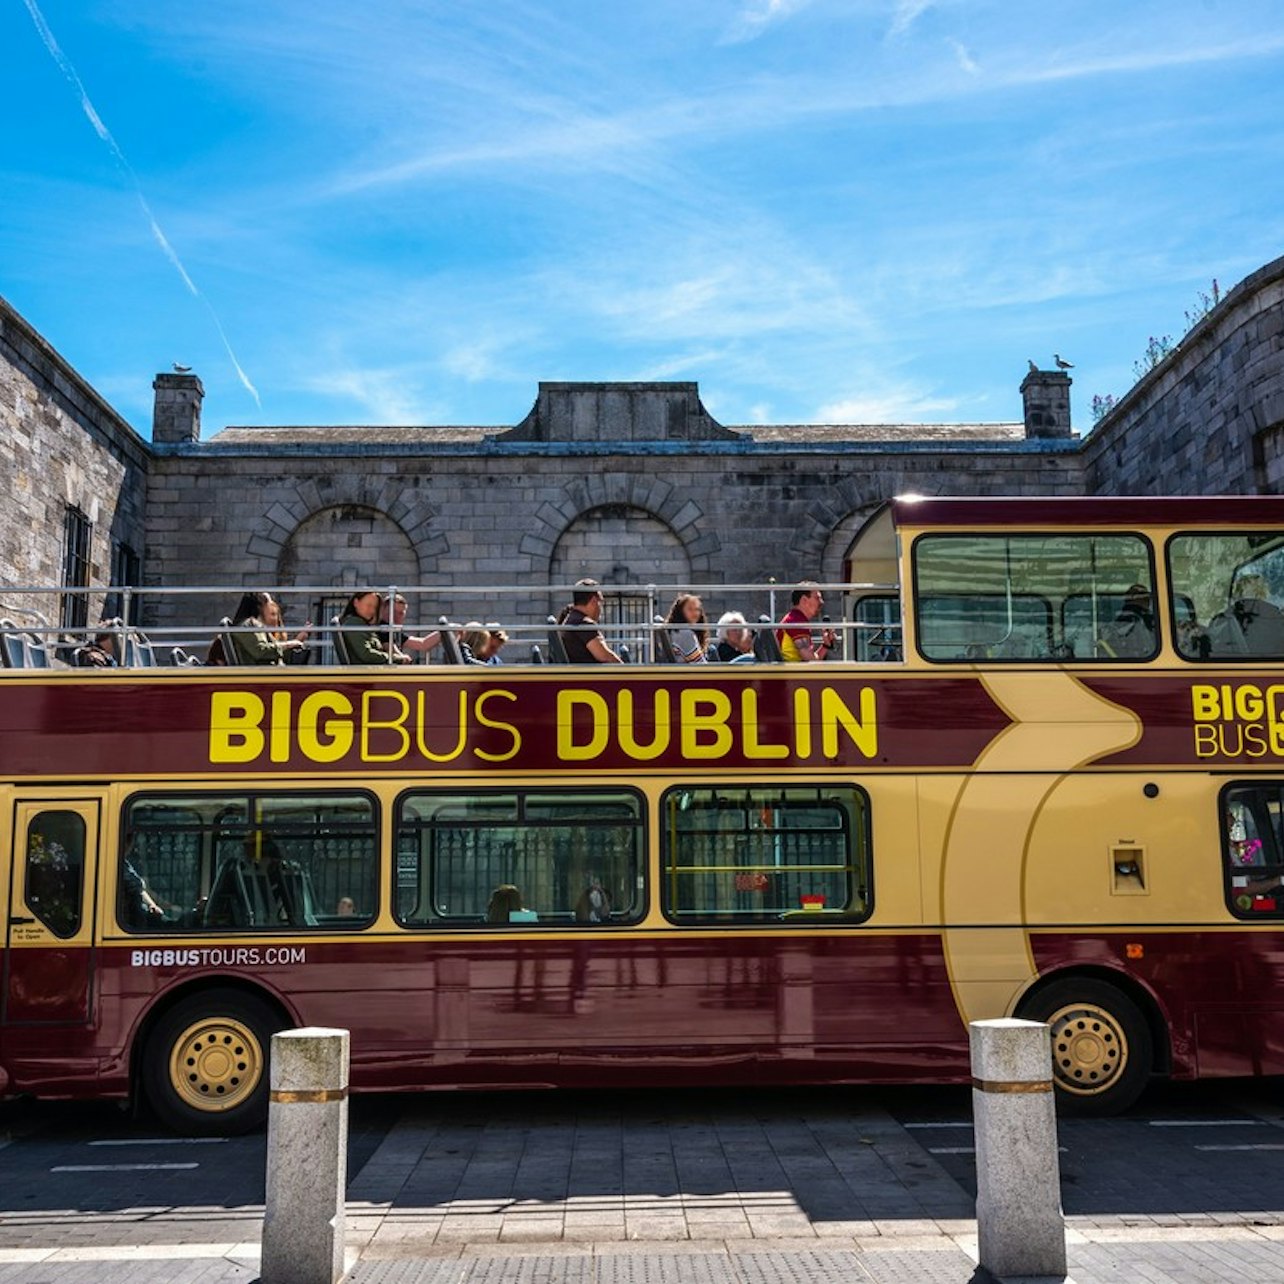 Go City Pase Dublín Todo Incluido: Entrada a más de 35 atracciones - Alojamientos en Dublín